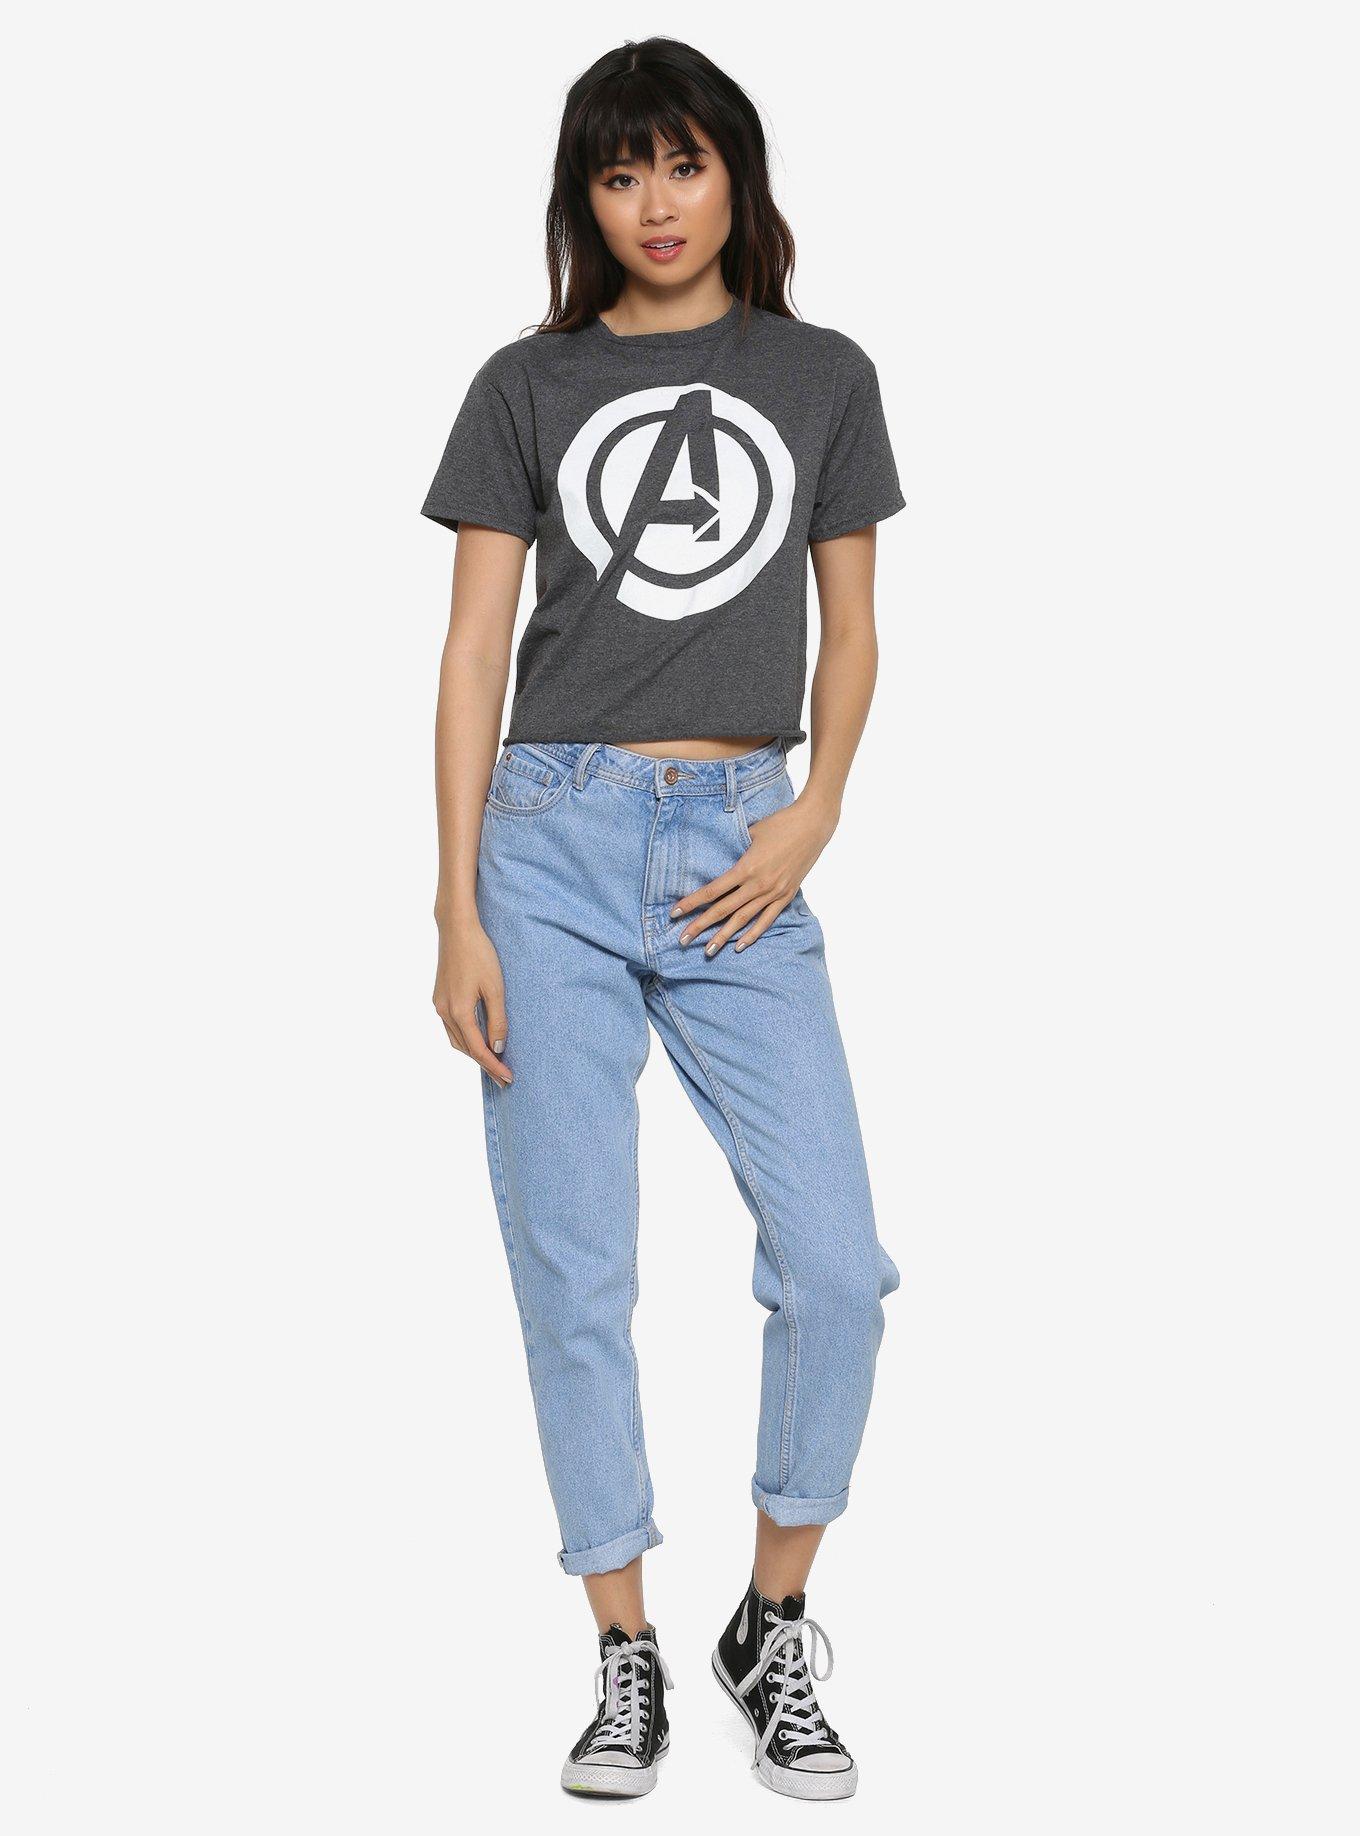 Marvel The Avengers White Logo Girls Crop Top, GREY, alternate